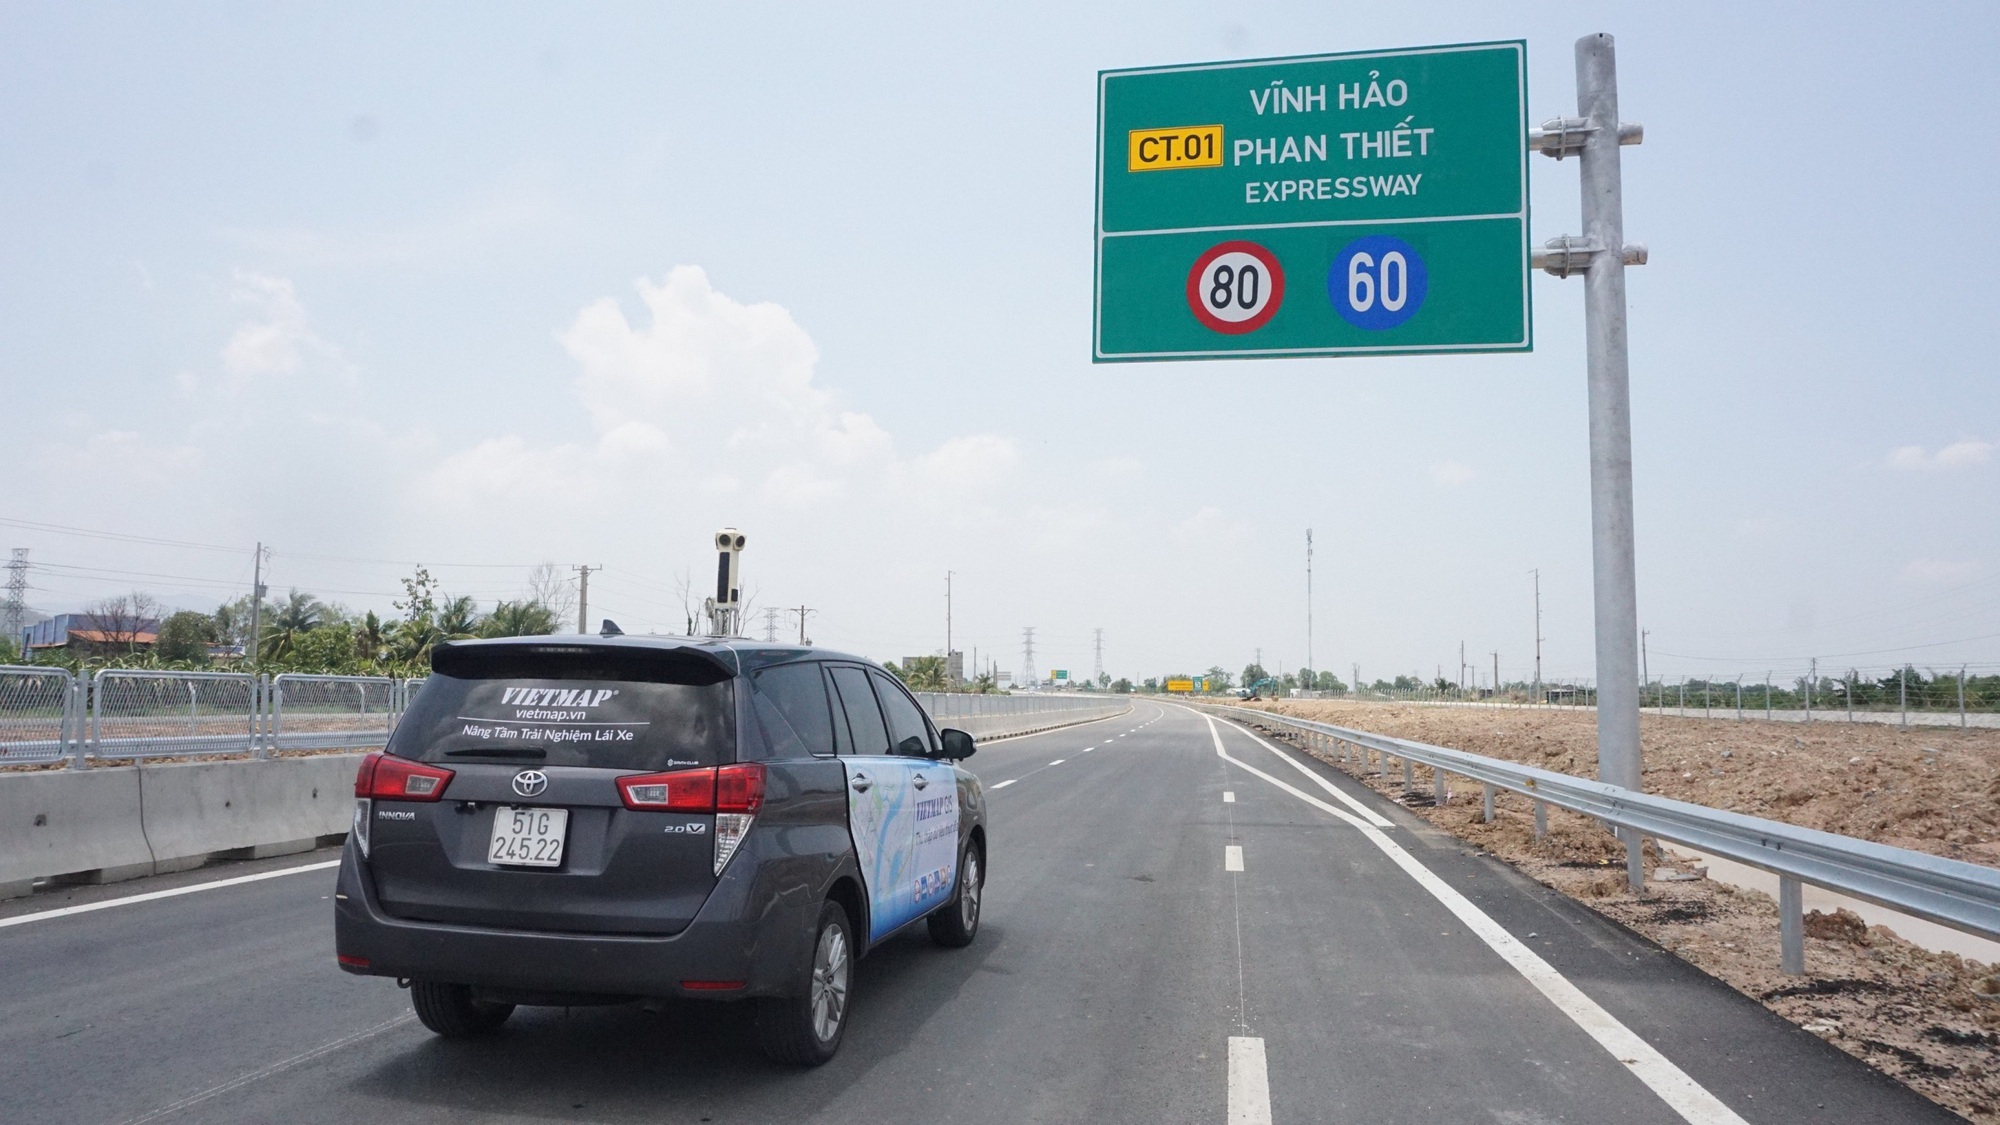 VIETMAP LIVE quyết tâm trở thành ứng dụng dẫn đường hàng đầu Việt Nam - Ảnh 1.